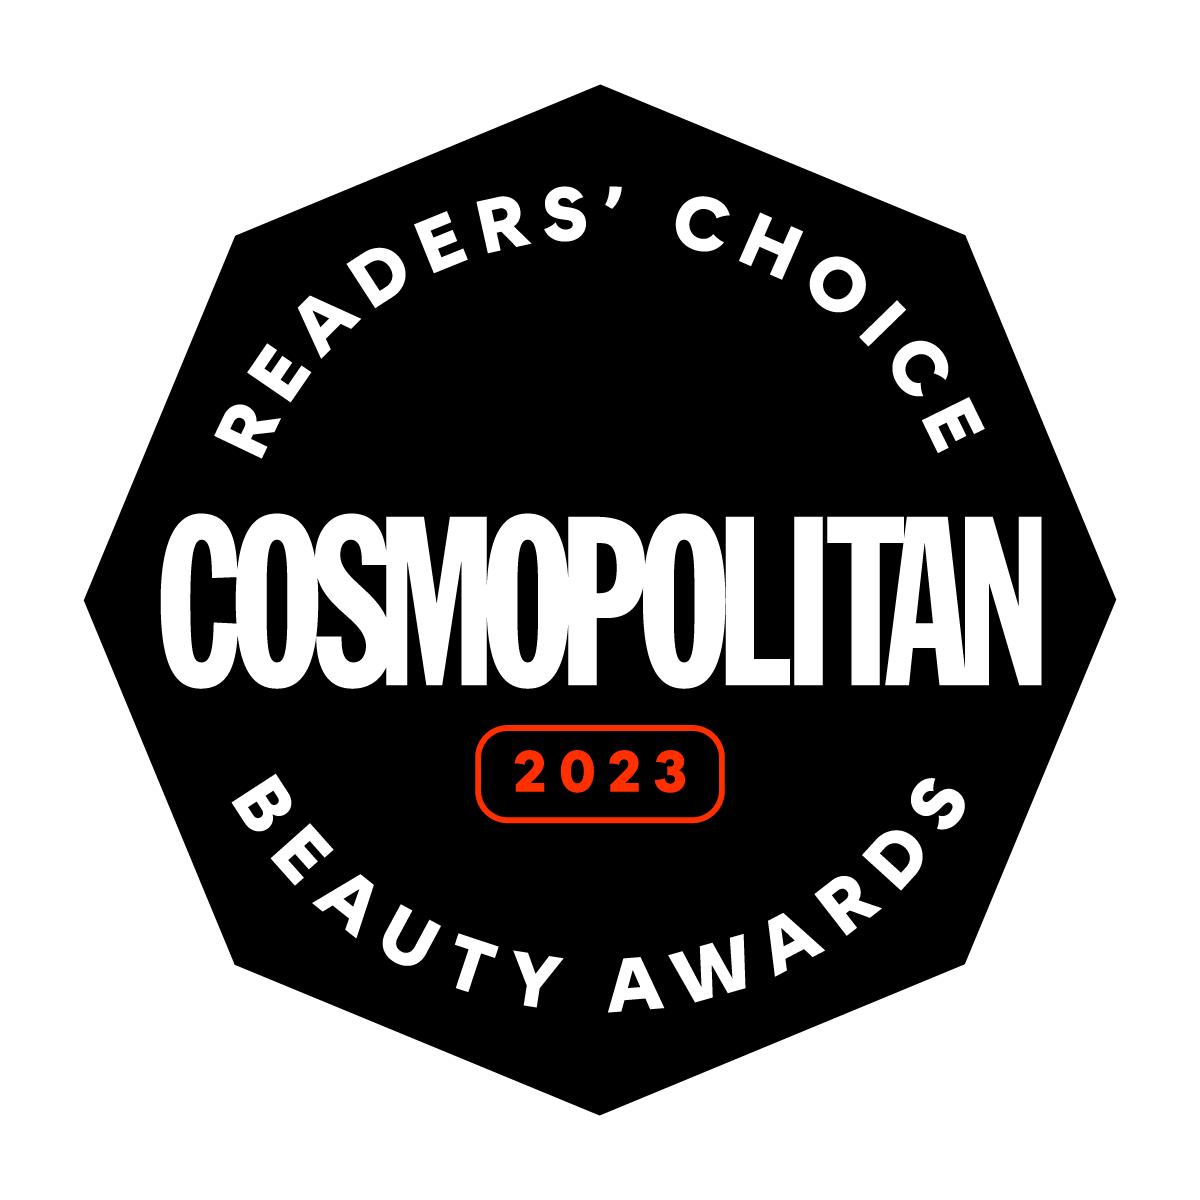 Cosmopolitan award 2023